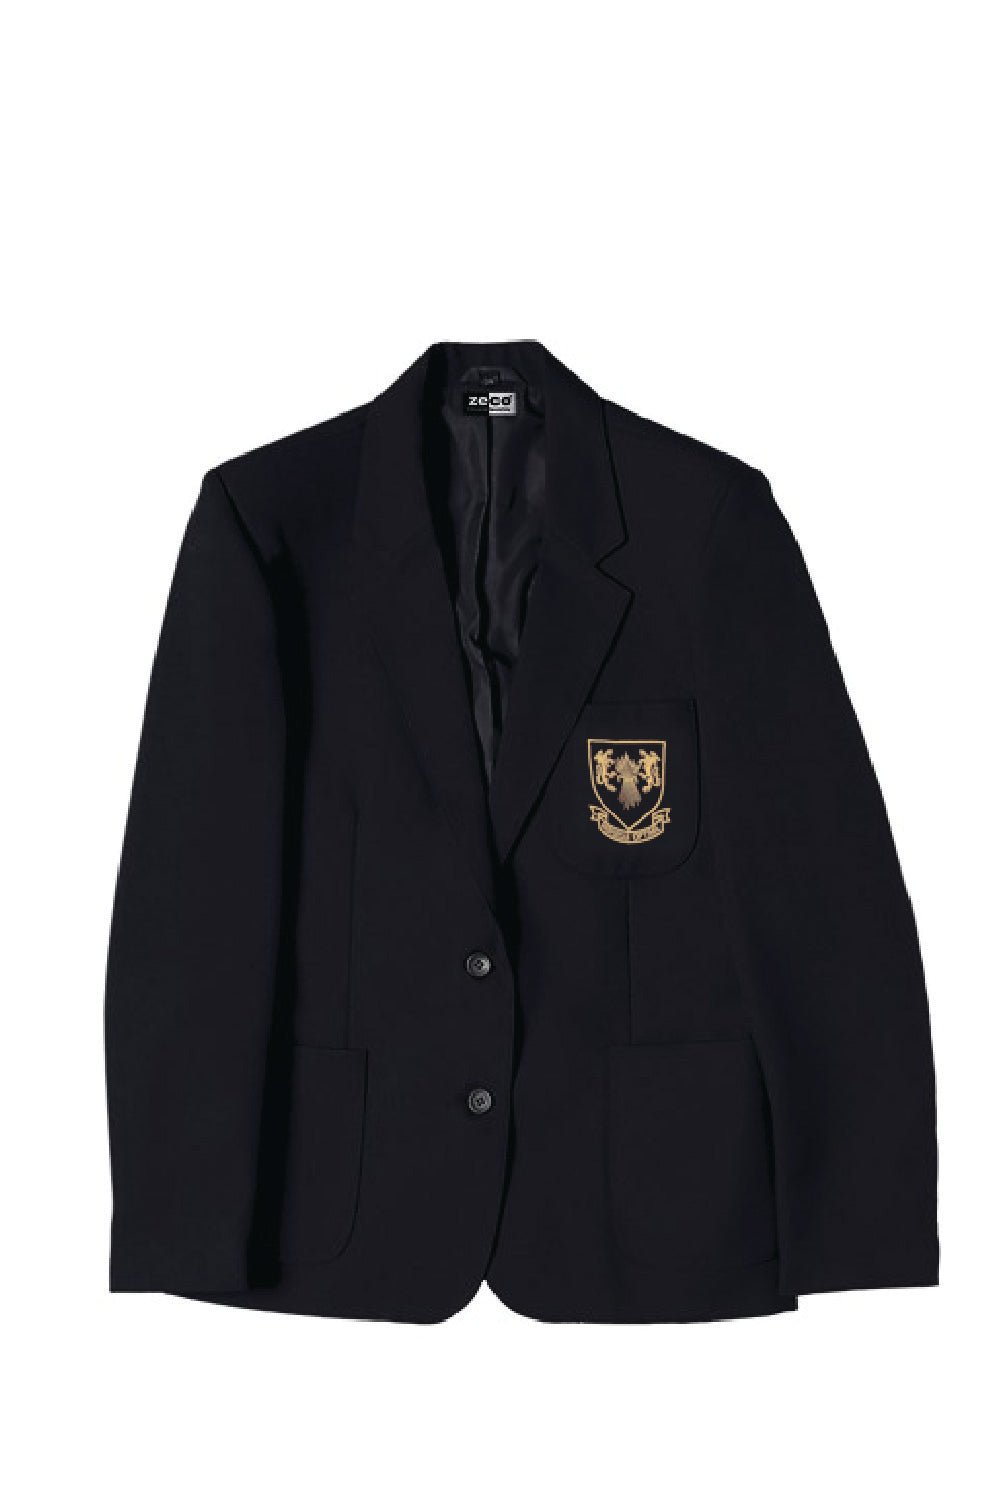 St Clere's Boys School Blazer - Uniformwise Schoolwear